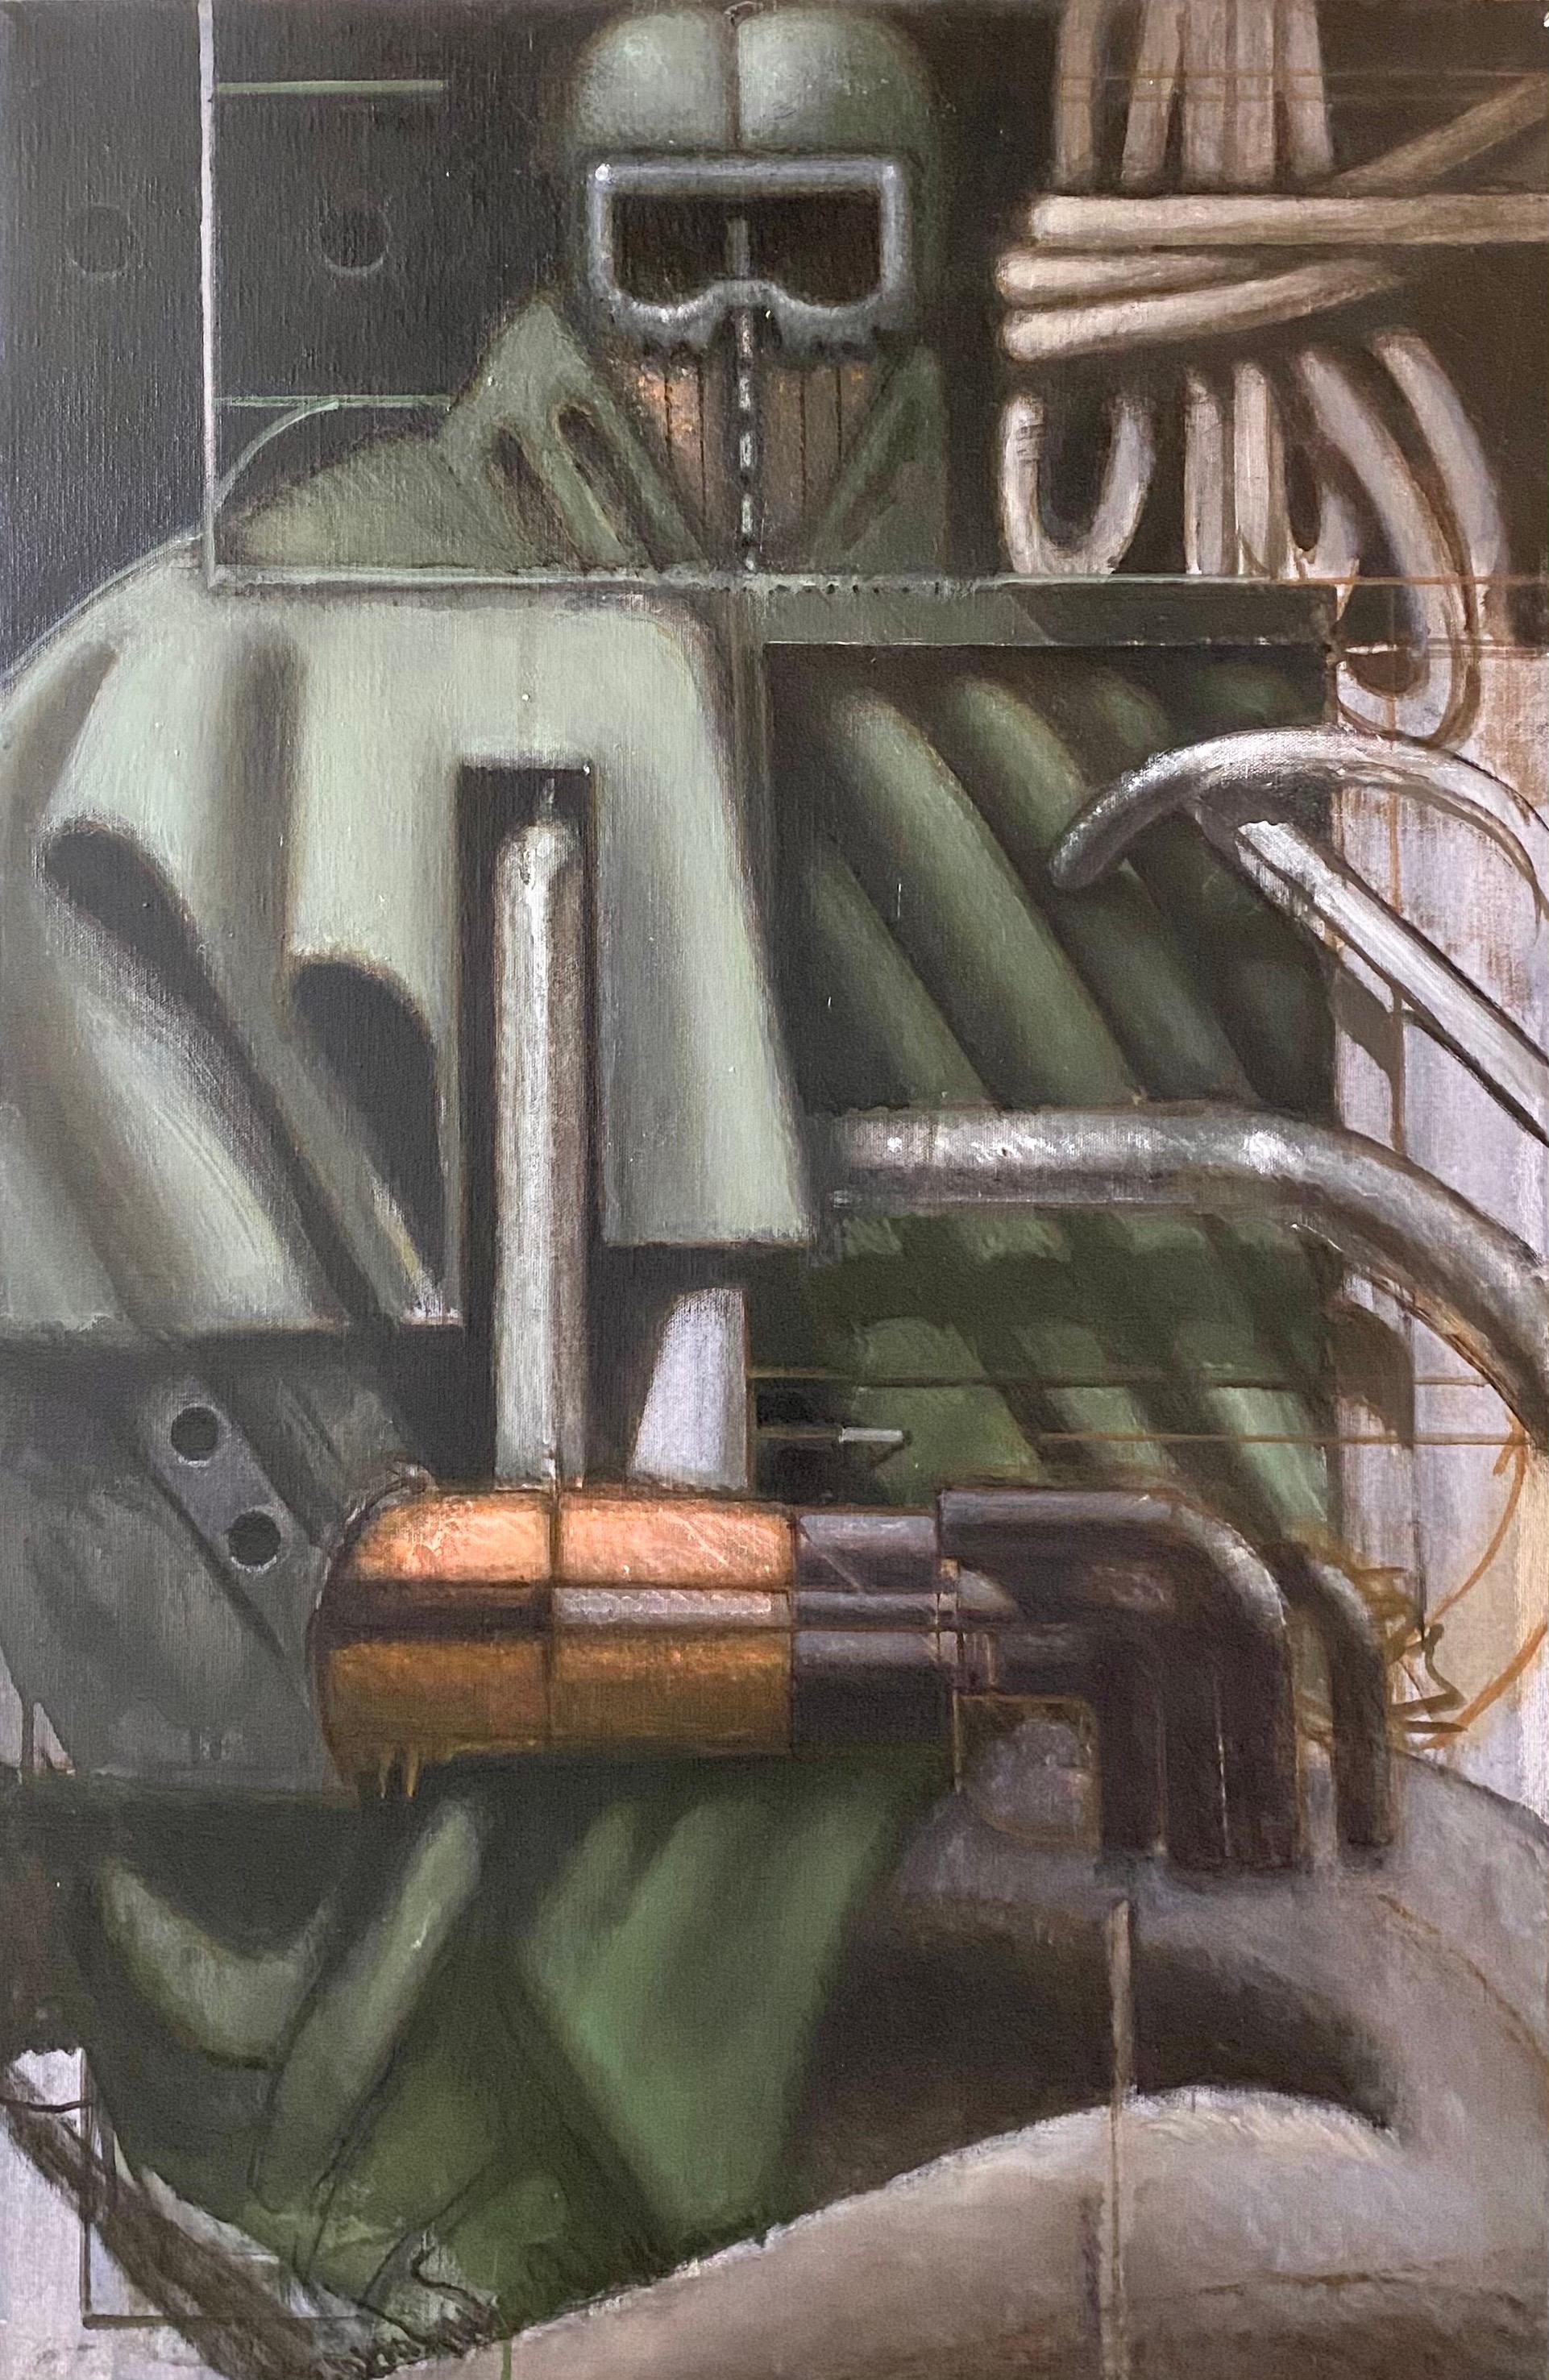 Abstract Painting Nick de Angelis - Peinture à l'huile - Collage de techniques mixtes - Art expressionniste abstrait futuriste - Art de la machine